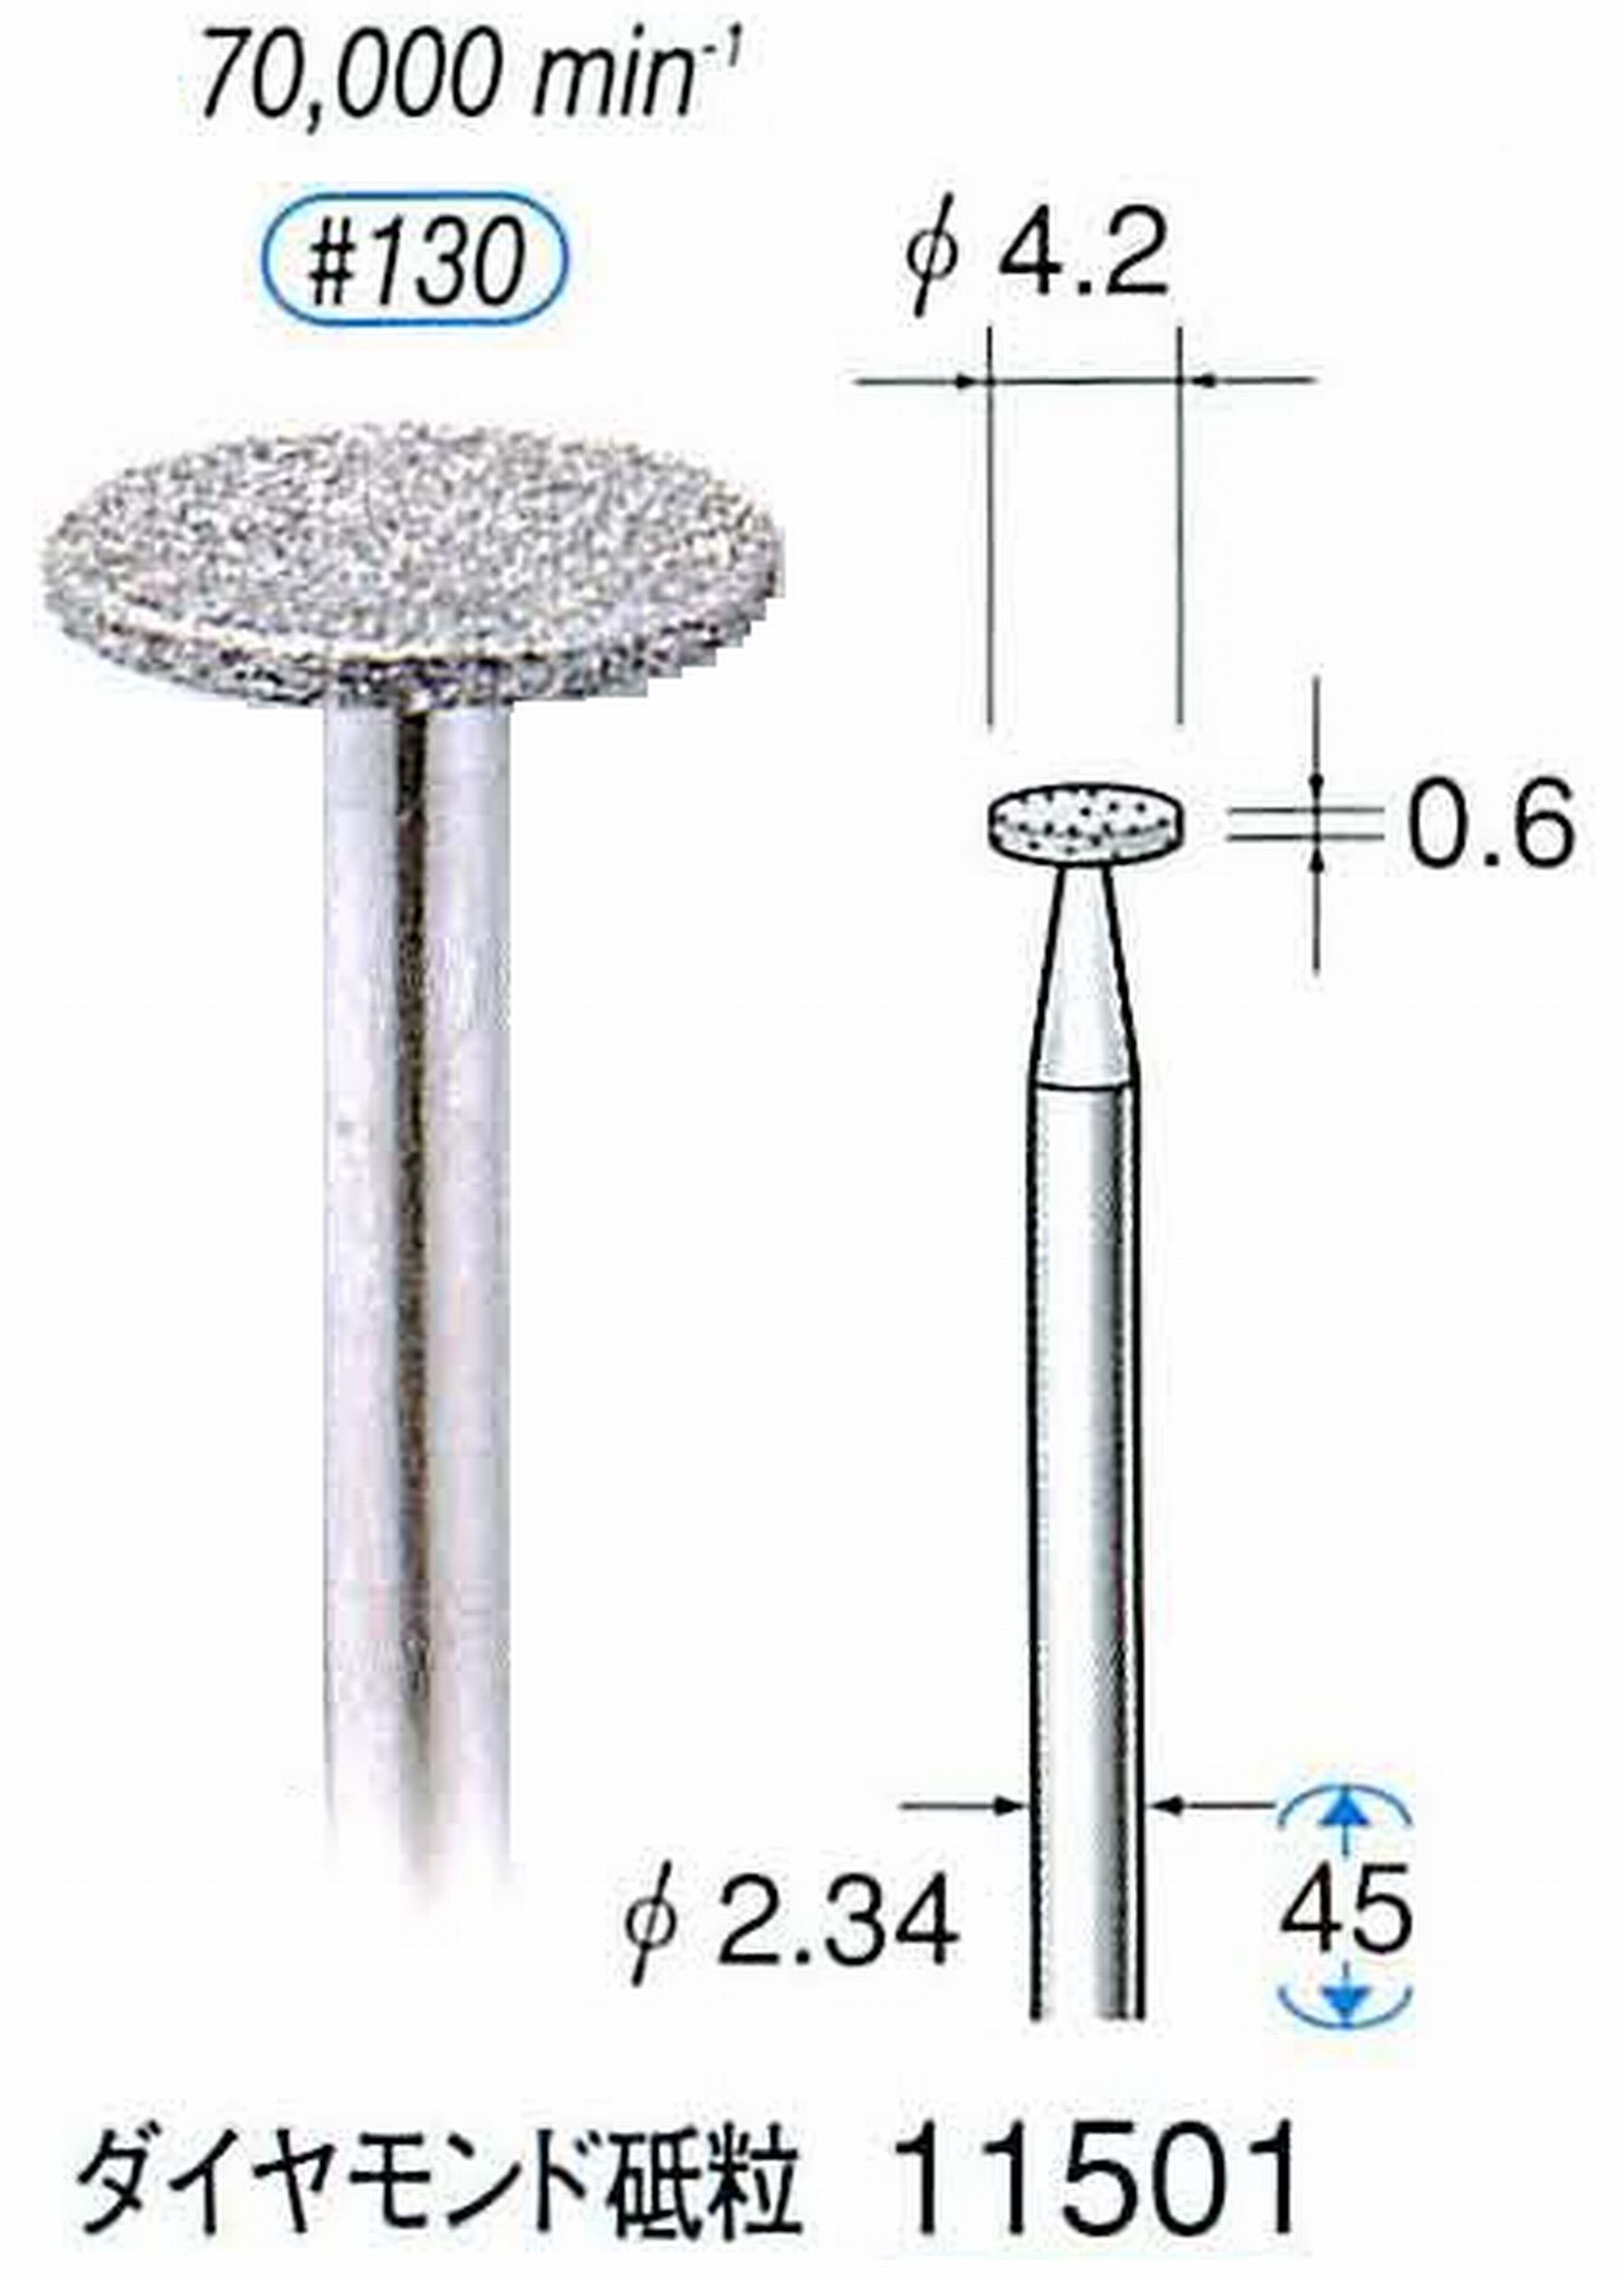 ナカニシ/NAKANISHI 電着ダイヤモンドバー ダイヤモンド砥粒 軸径(シャンク)φ2.34mm 11501